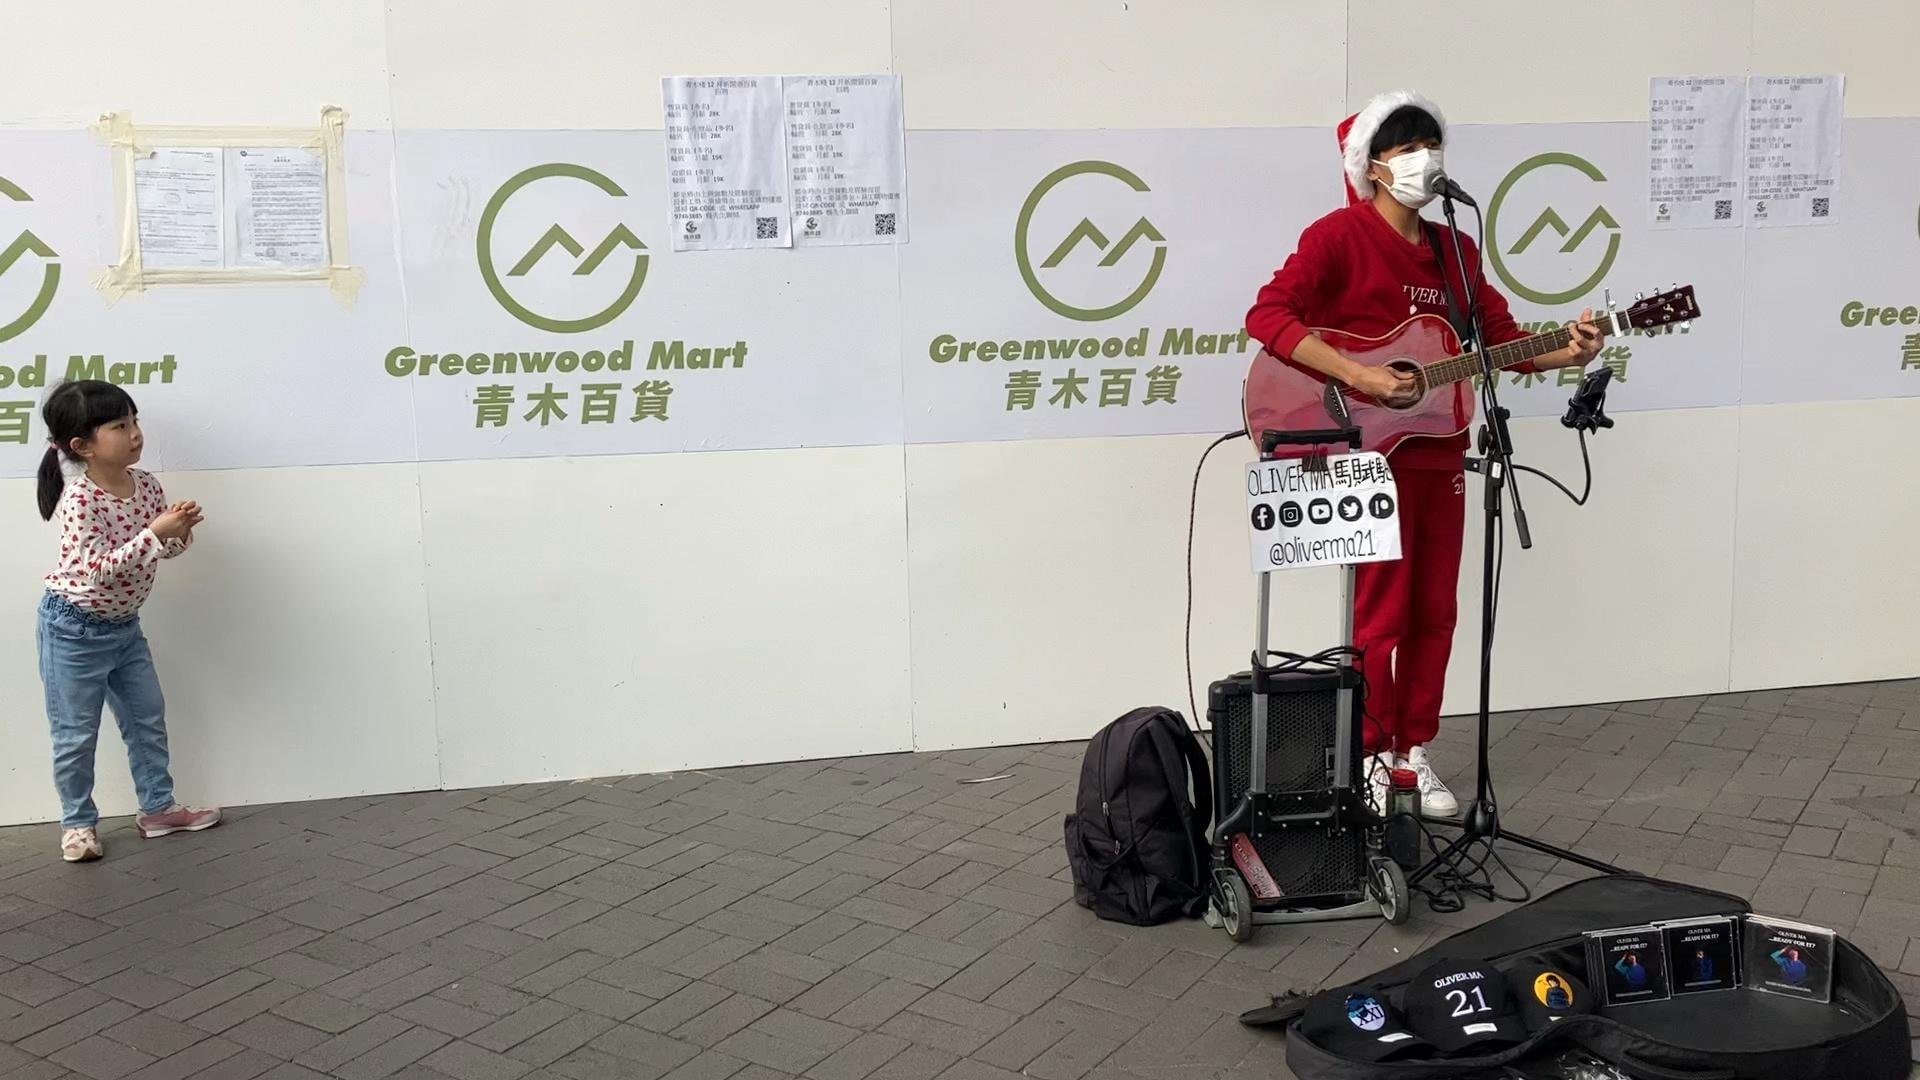 香港尖沙咀碼頭，一年青人在演唱歌曲，吸引不少遊客欣賞！
#香港 #尖沙咀碼頭 #街頭演唱